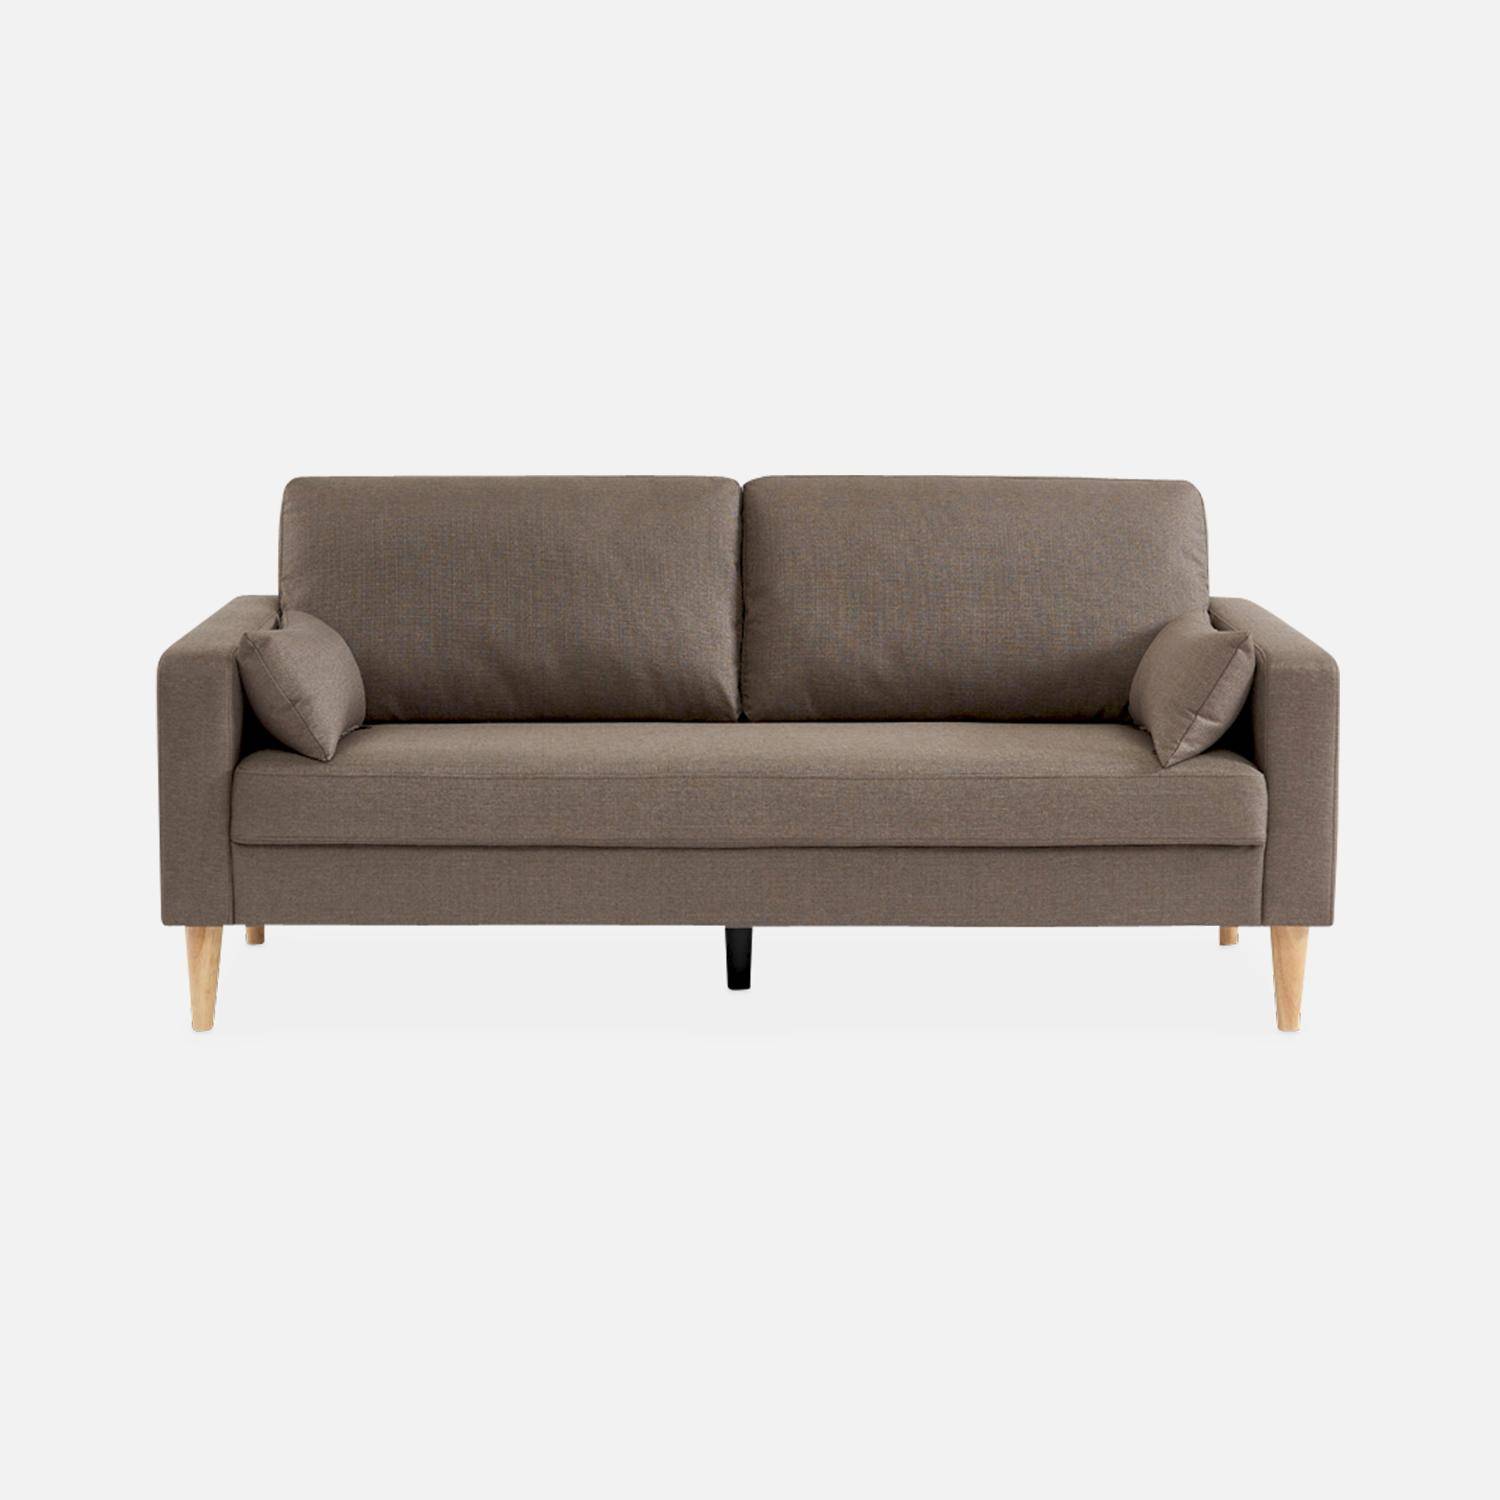 Donkergrijze stoffen driezits sofa - Bjorn - 3-zits bank met houten poten, scandinavische stijl  ,sweeek,Photo3